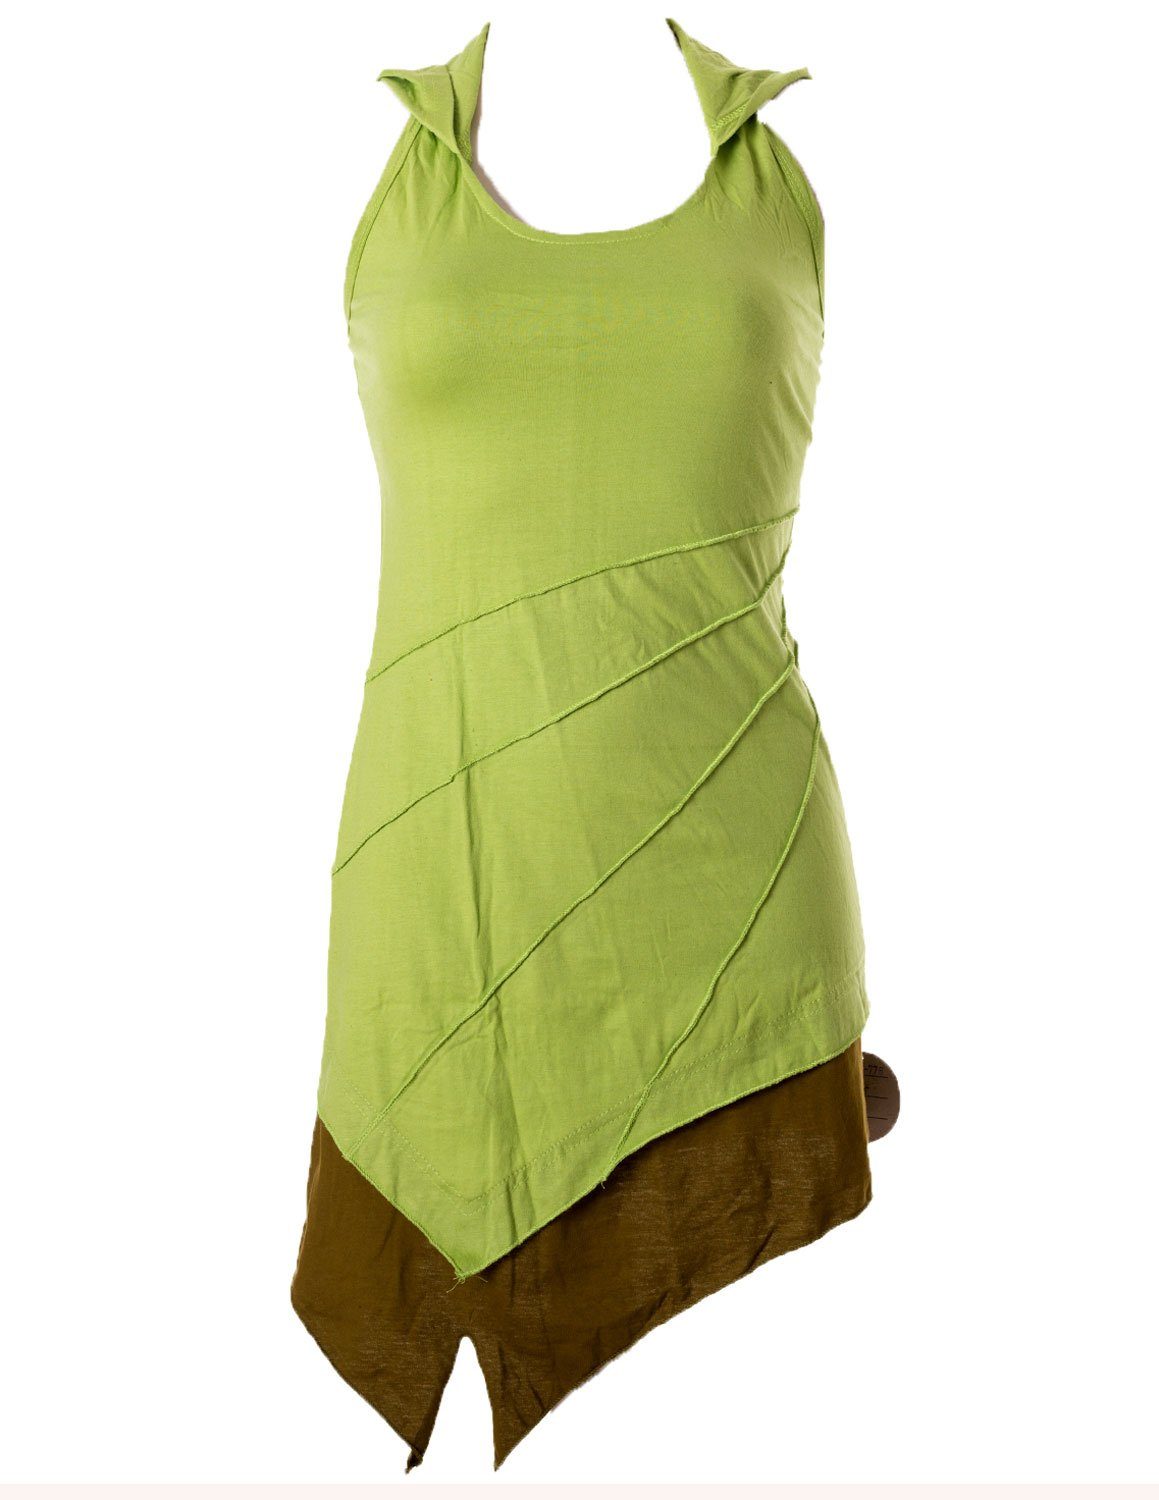 Vishes Neckholderkleid Mini Kleid Neckholder zweifarbig Zipfelkleid Hippie, Goa, Boho Elfen Style grün